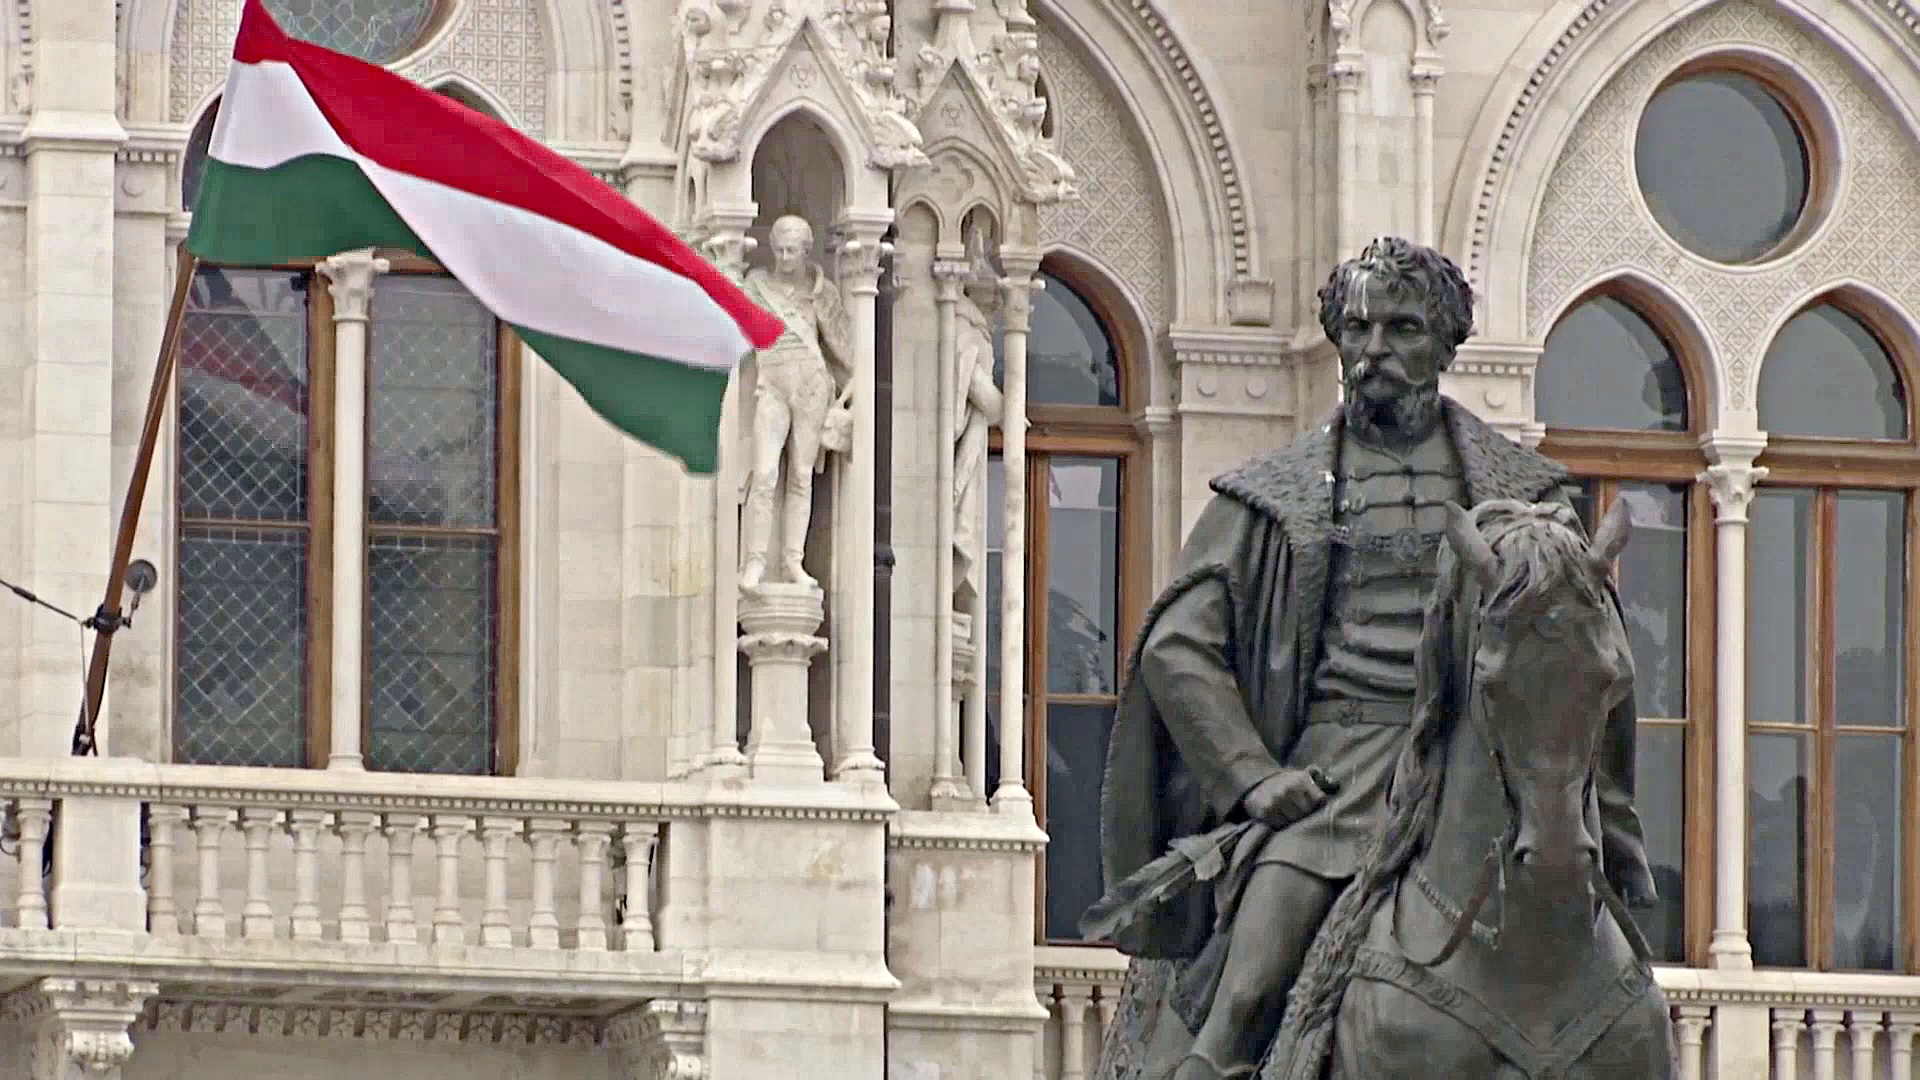 ЕС урежет финансирование для Венгрии на €7,5 млрд